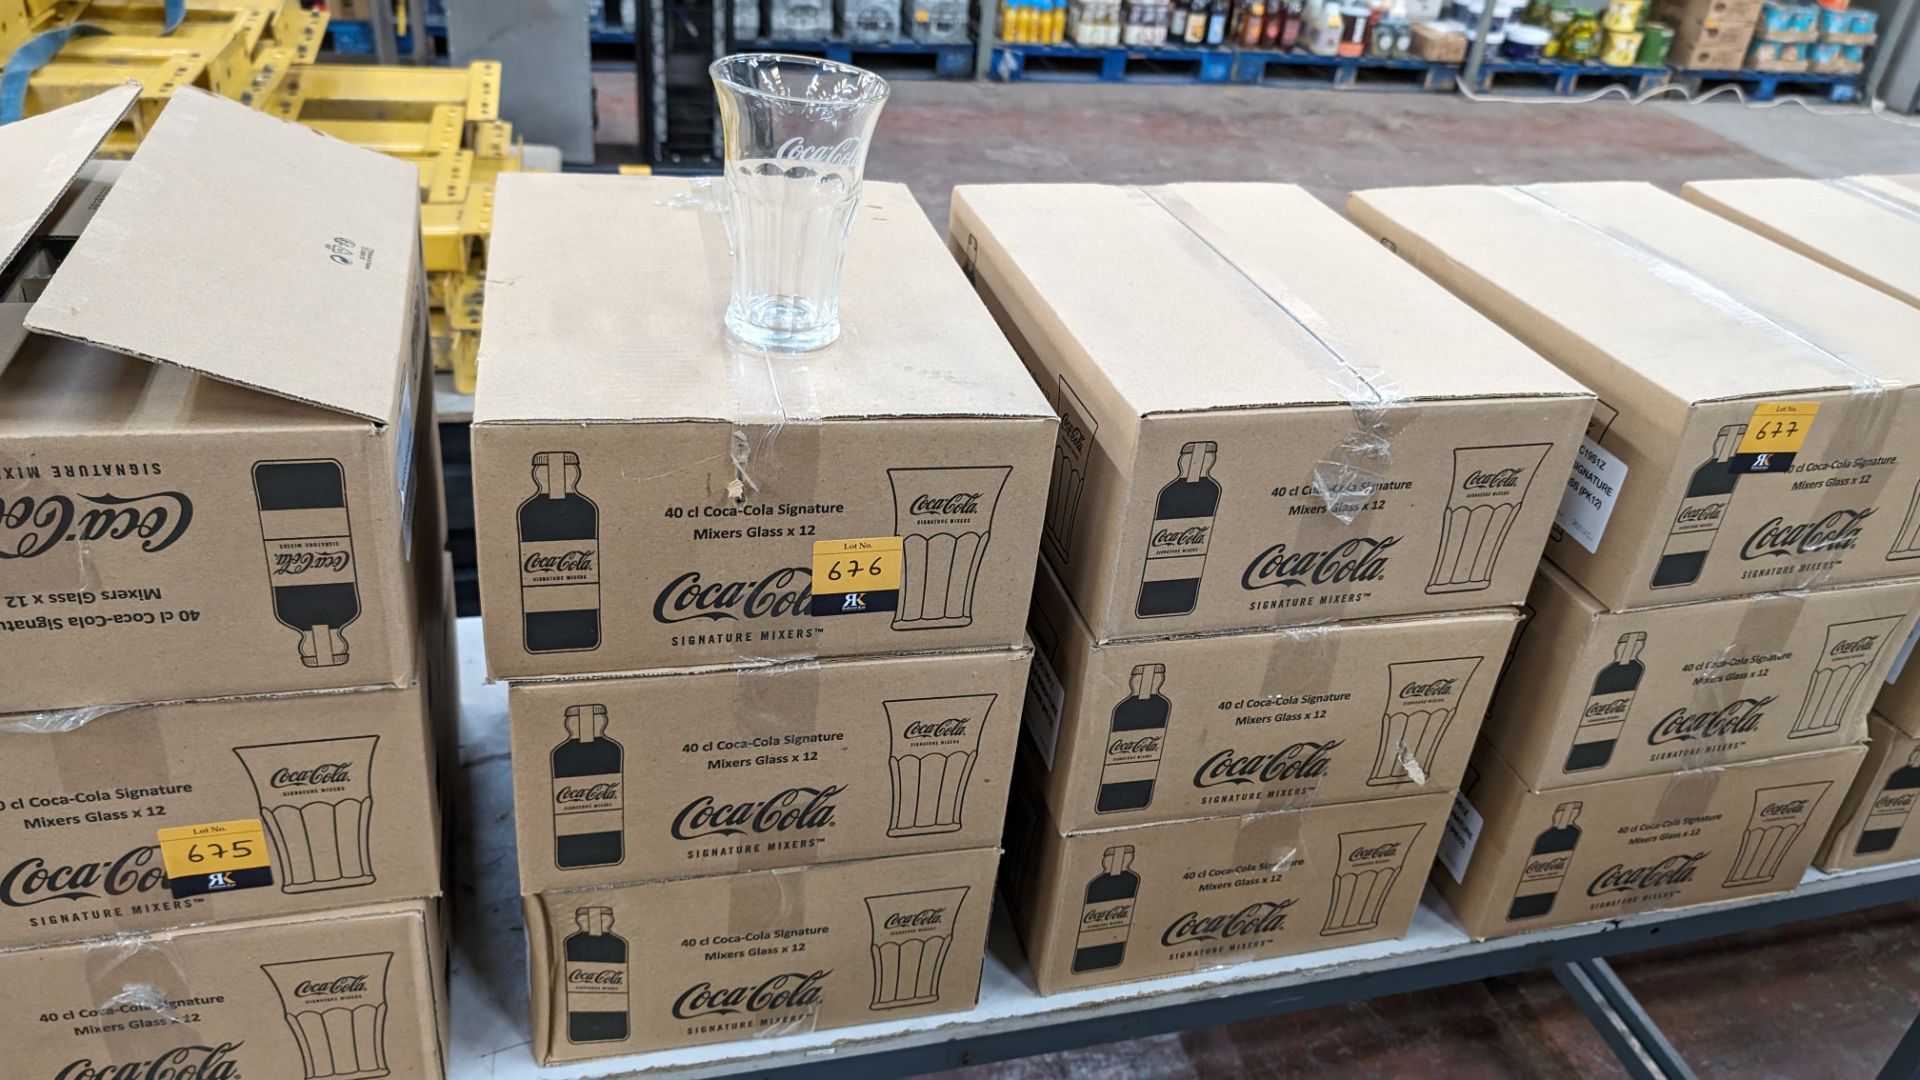 72 off Coca Cola 40cl Signature mixers glasses - 6 cartons